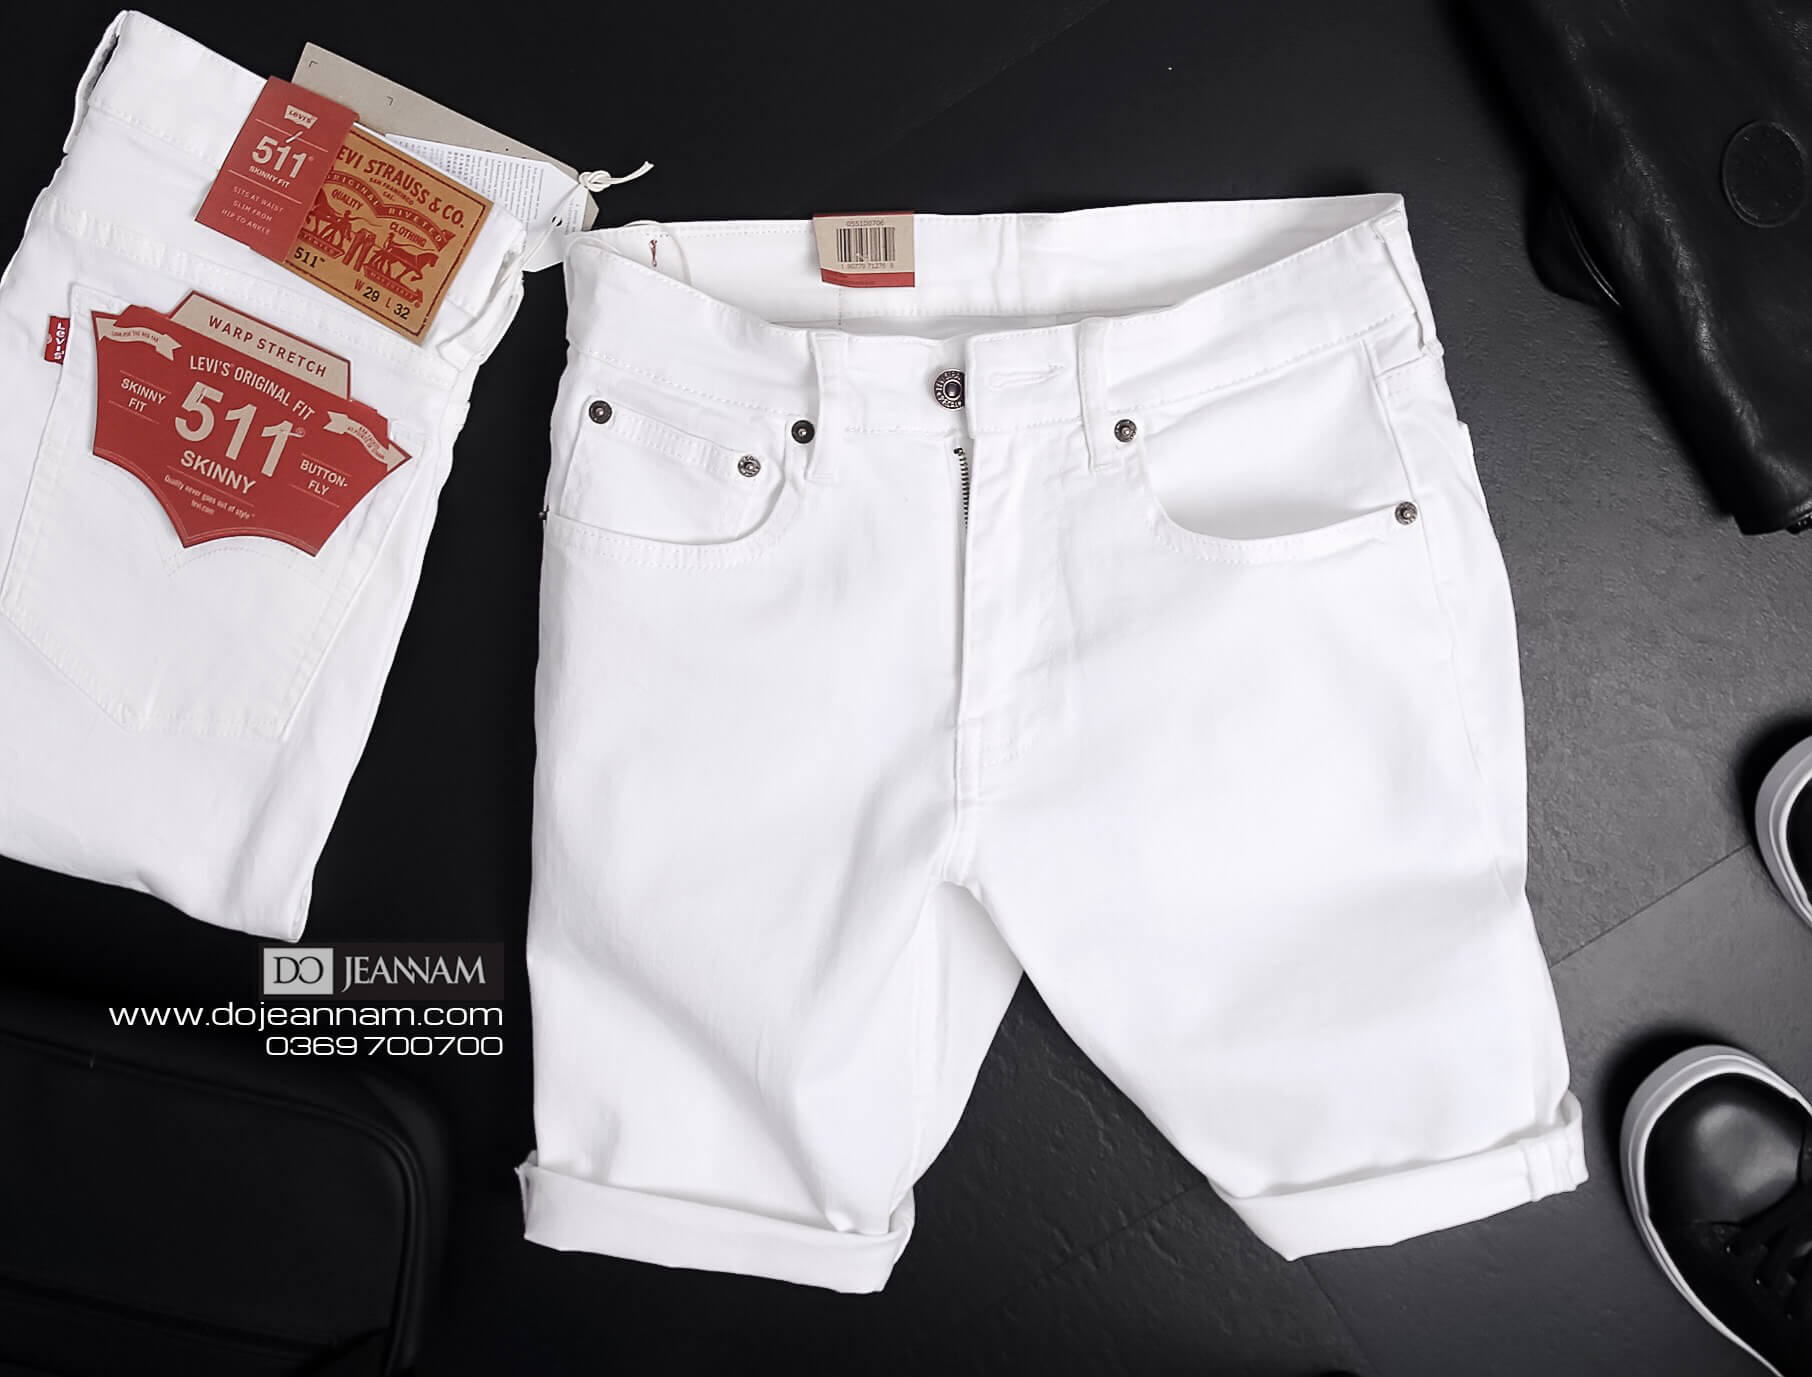 Quần Jeans Levi's 511 chính hãng made in Cambodia. Dáng quần Slim Fit, chất  vải rất mềm mại hơi co dãn mặc thoải mái. Có ảnh thực tế cho mọi người tham